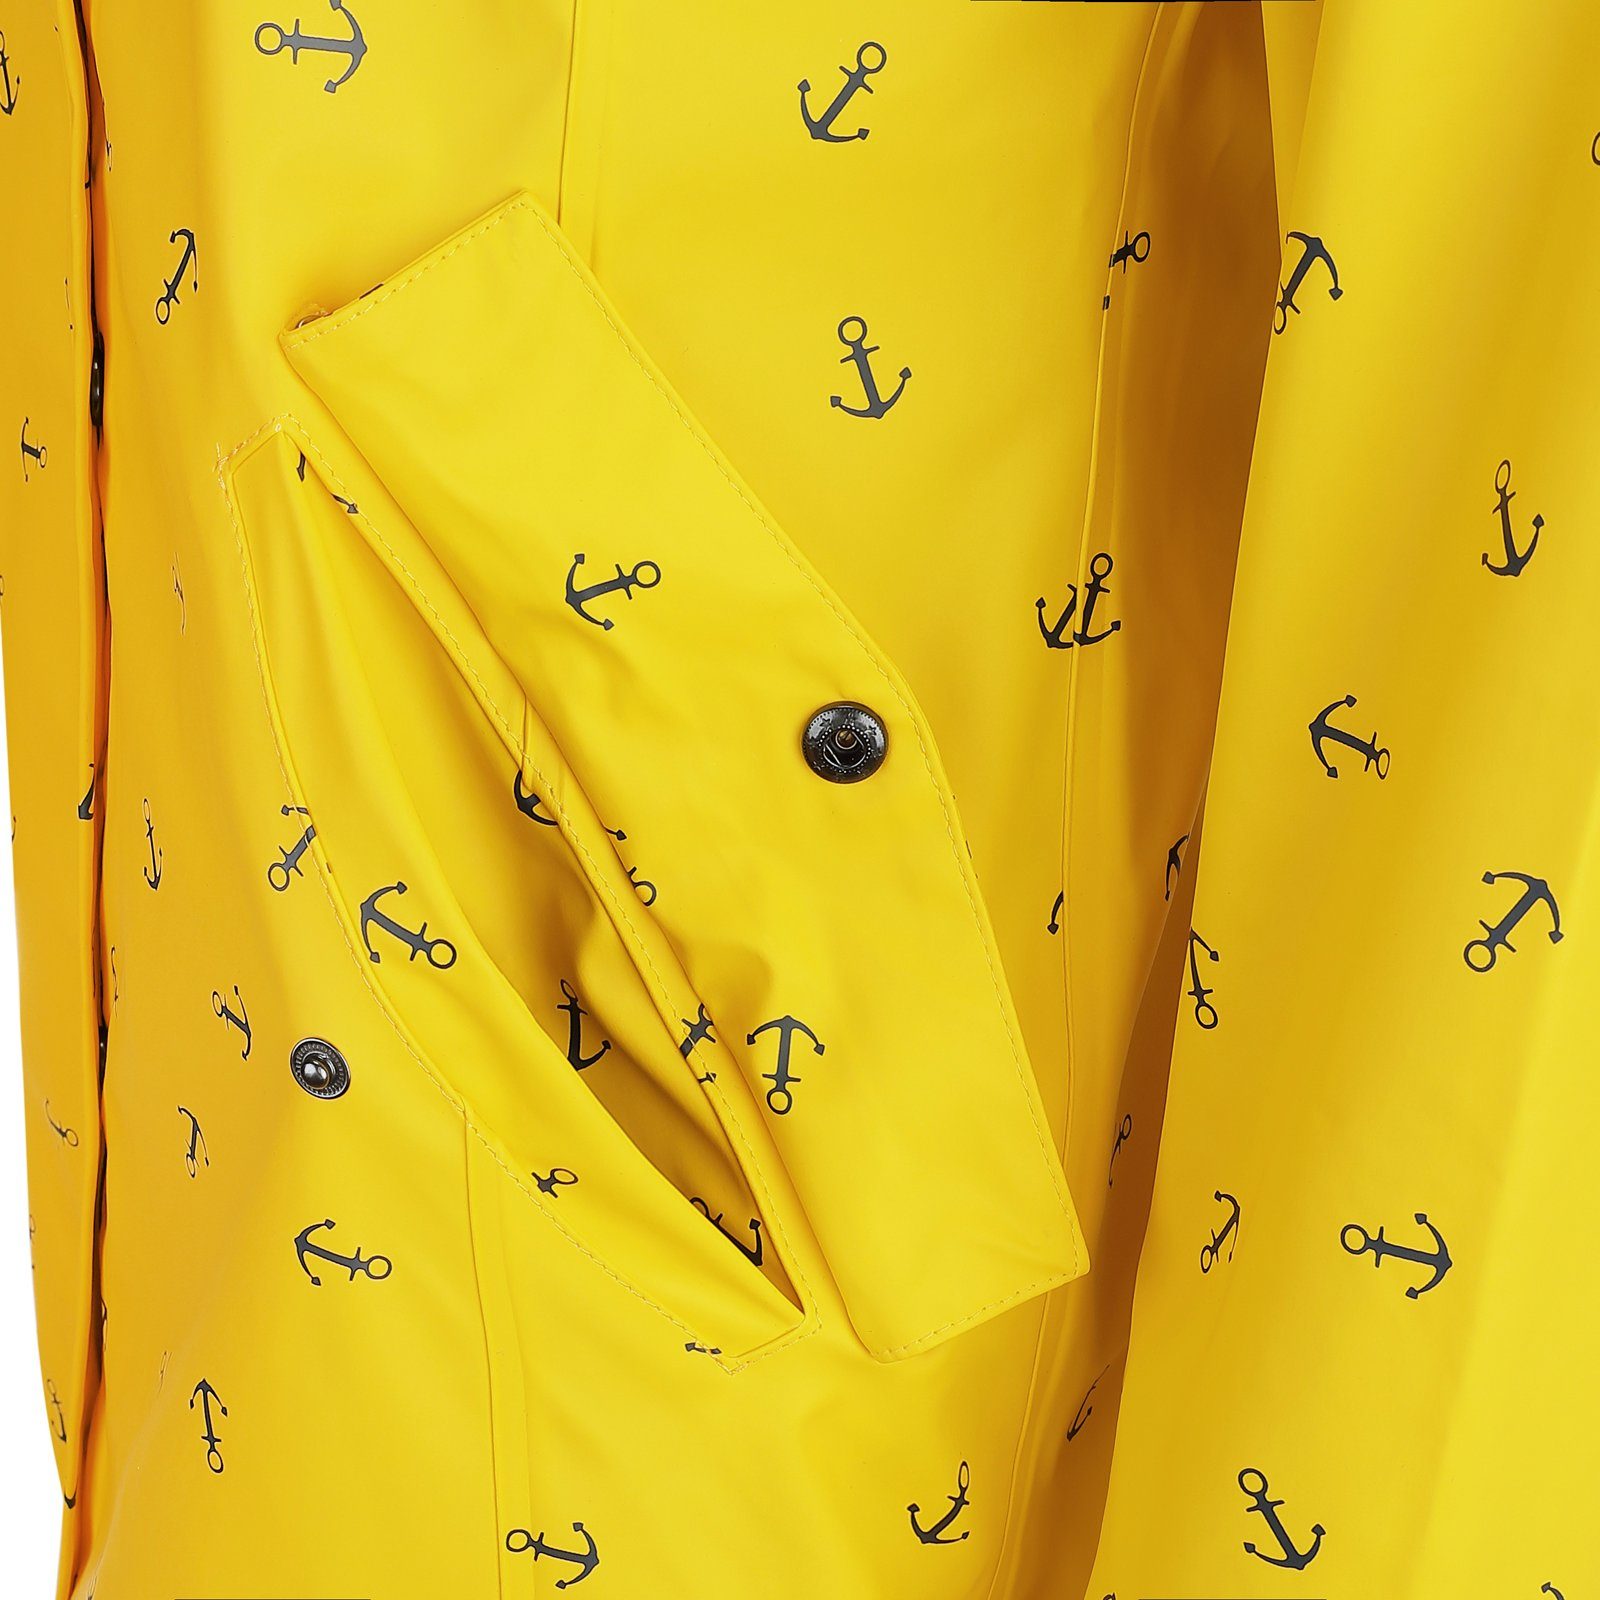 Dry Anker-Print Damen Fashion - mit Cuxhaven Regenmantel gelb Regenjacke wasserdicht Jacke Kapuze